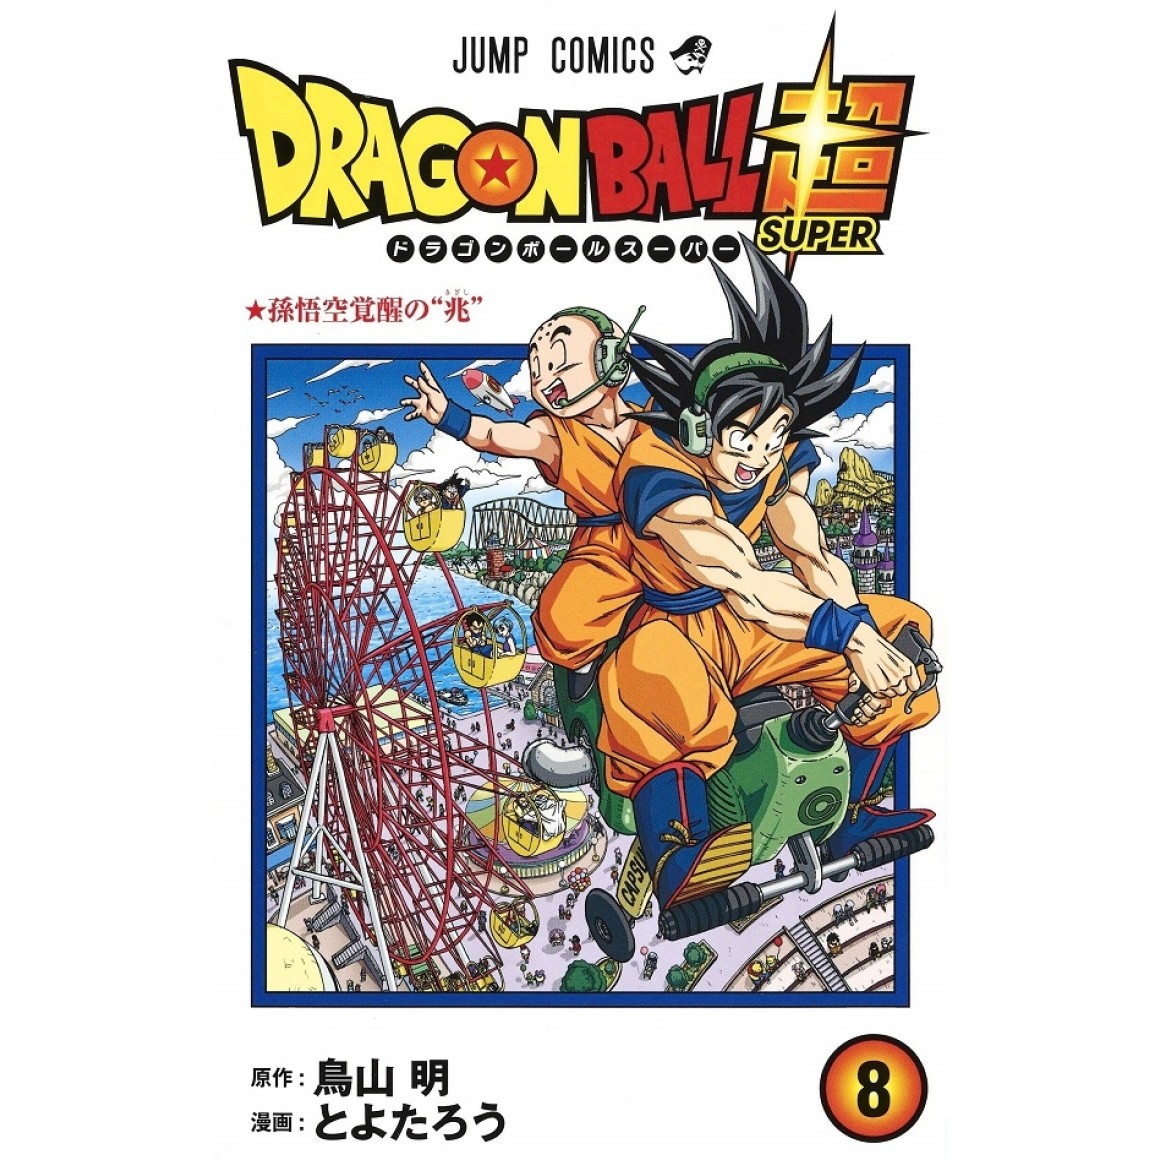 Mangá Dragon Ball completo em português.